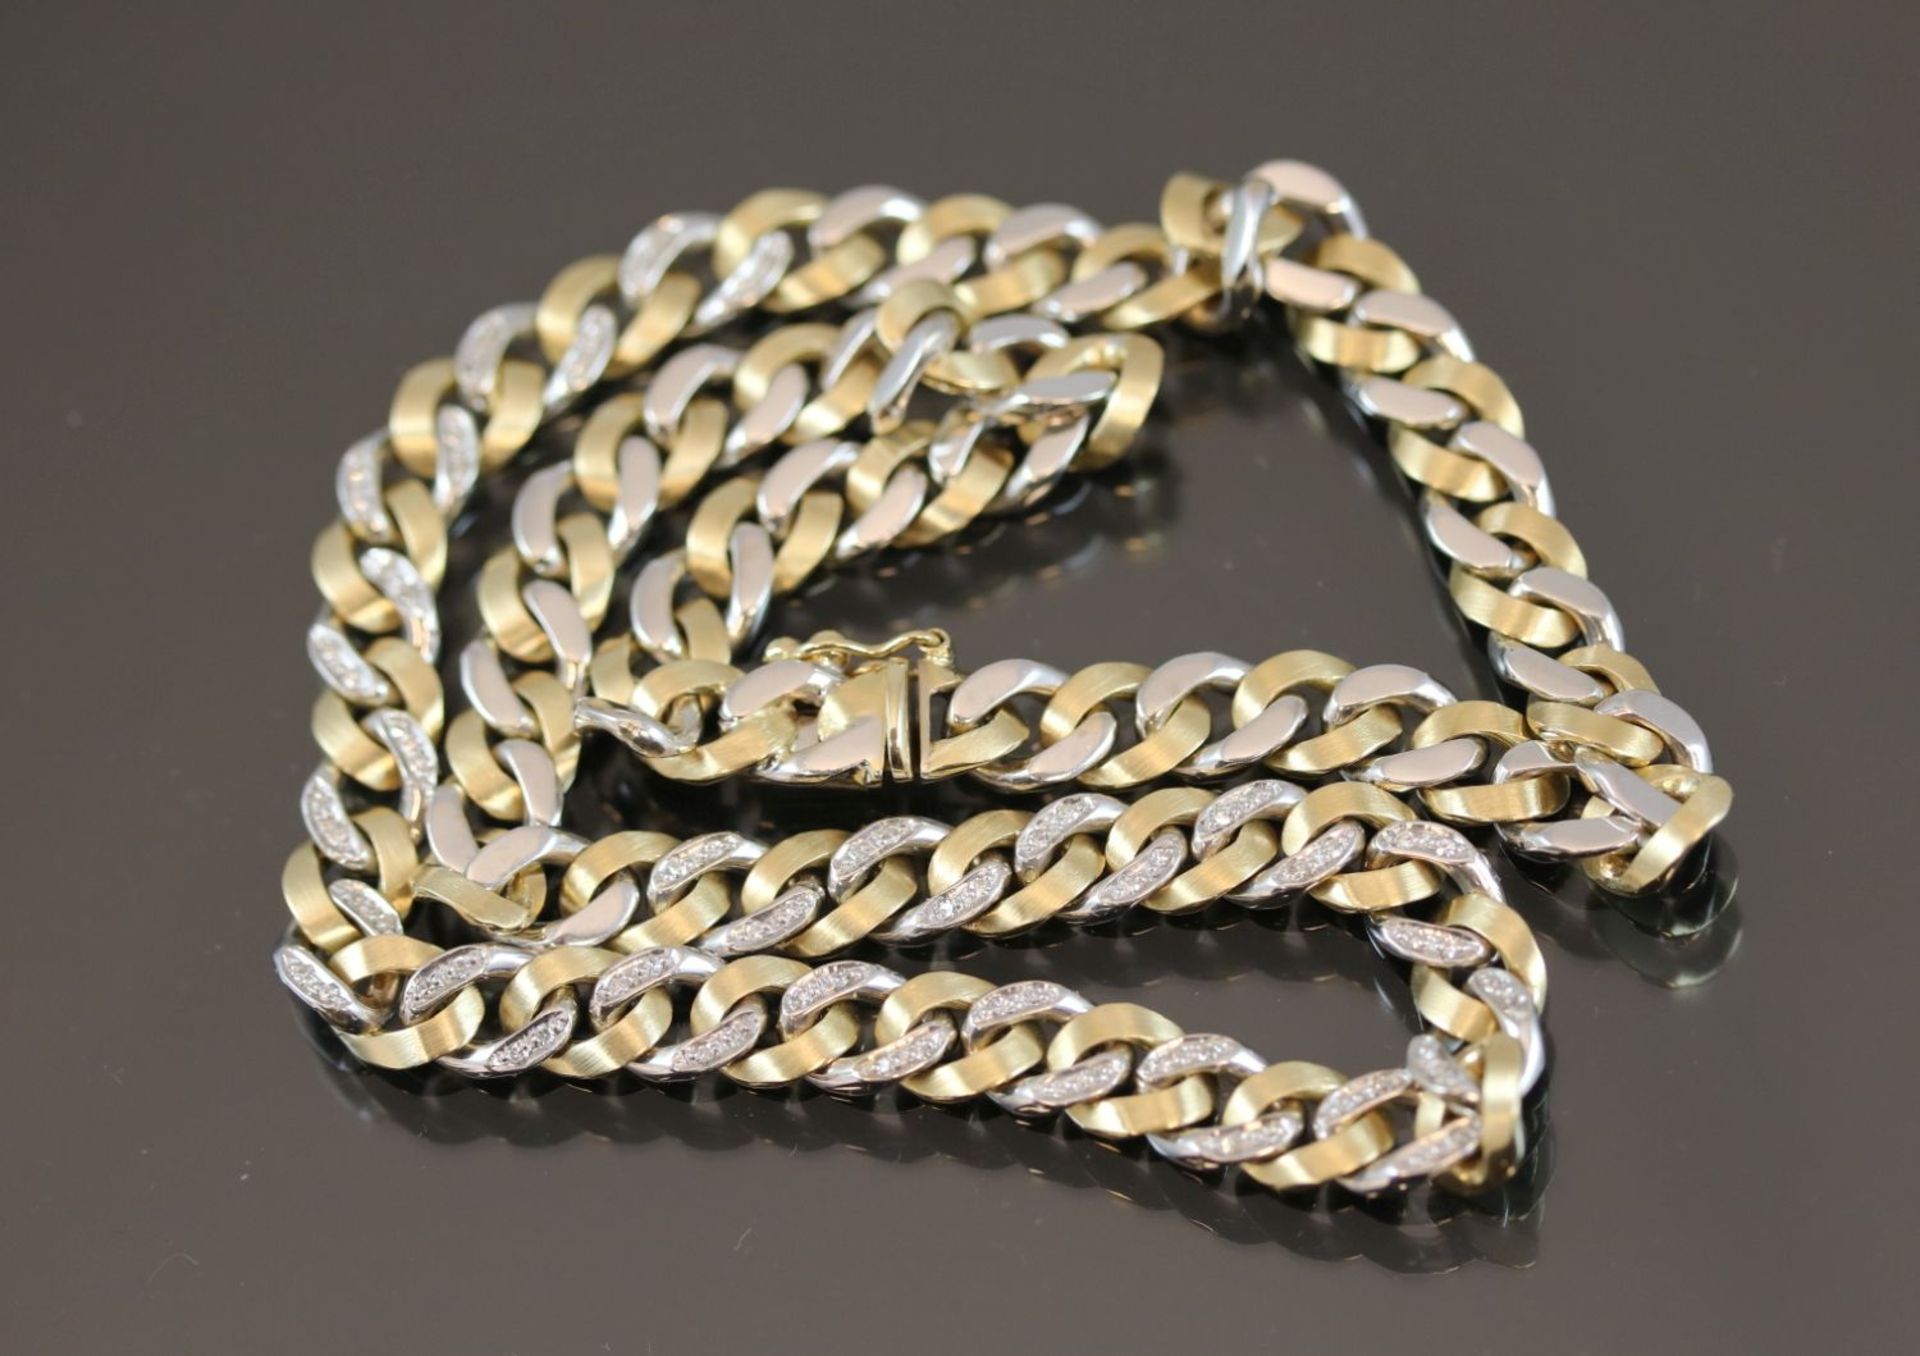 Diamant-Halskette, 585 Gold47,7 Gramm 72 Diamanten, 0,35 ct., w/si. Länge: 42 cm Schätzpreis: 4000,- - Image 4 of 4